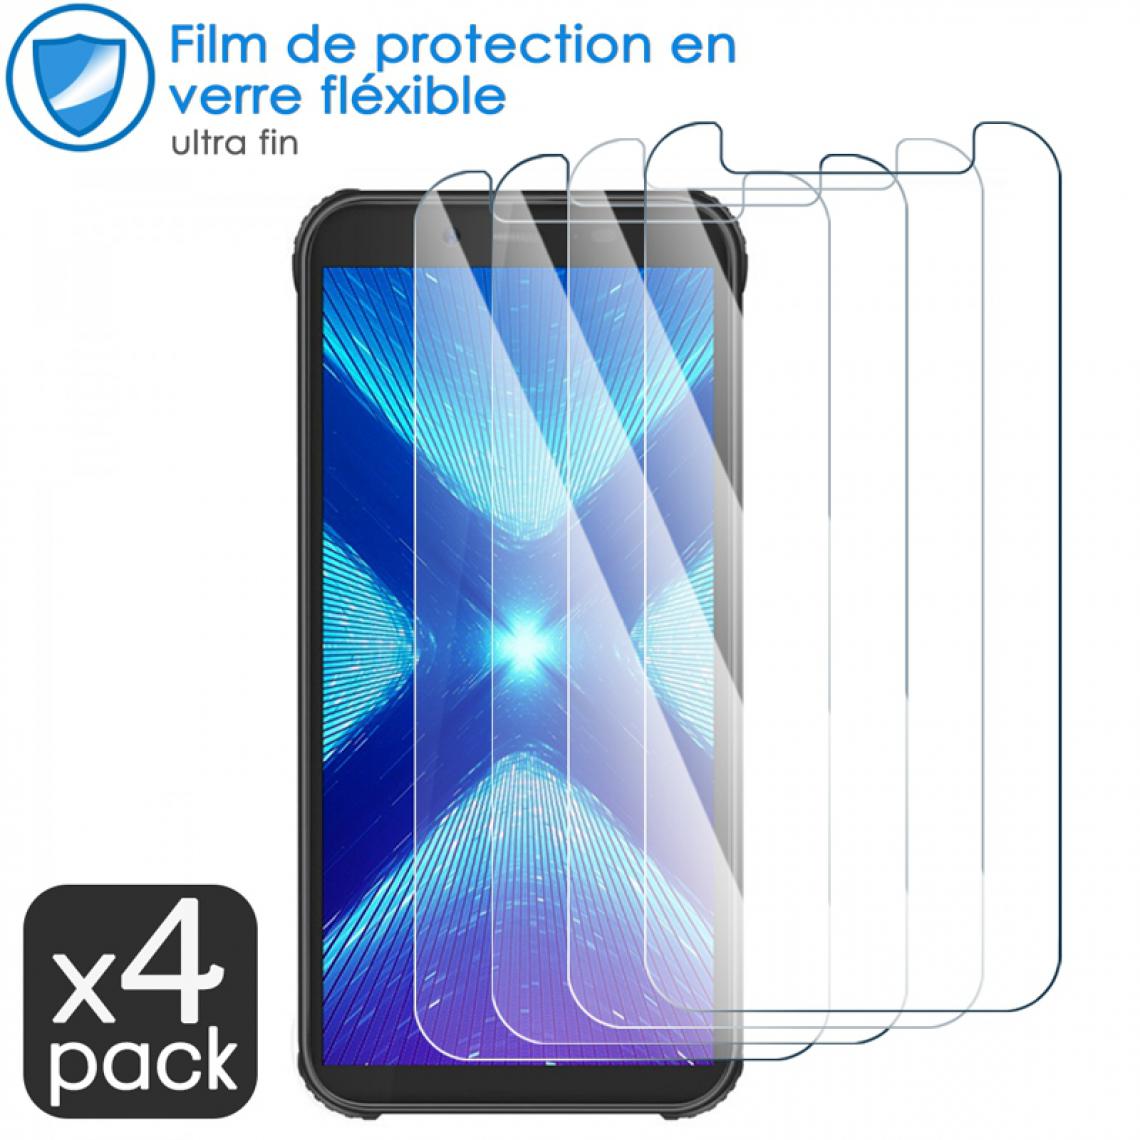 Karylax - Film de Protection d'écran en Verre Fléxible Dureté 9H pour ASUS ROG Phone II Ultimate Edition (Pack x4) - Protection écran smartphone